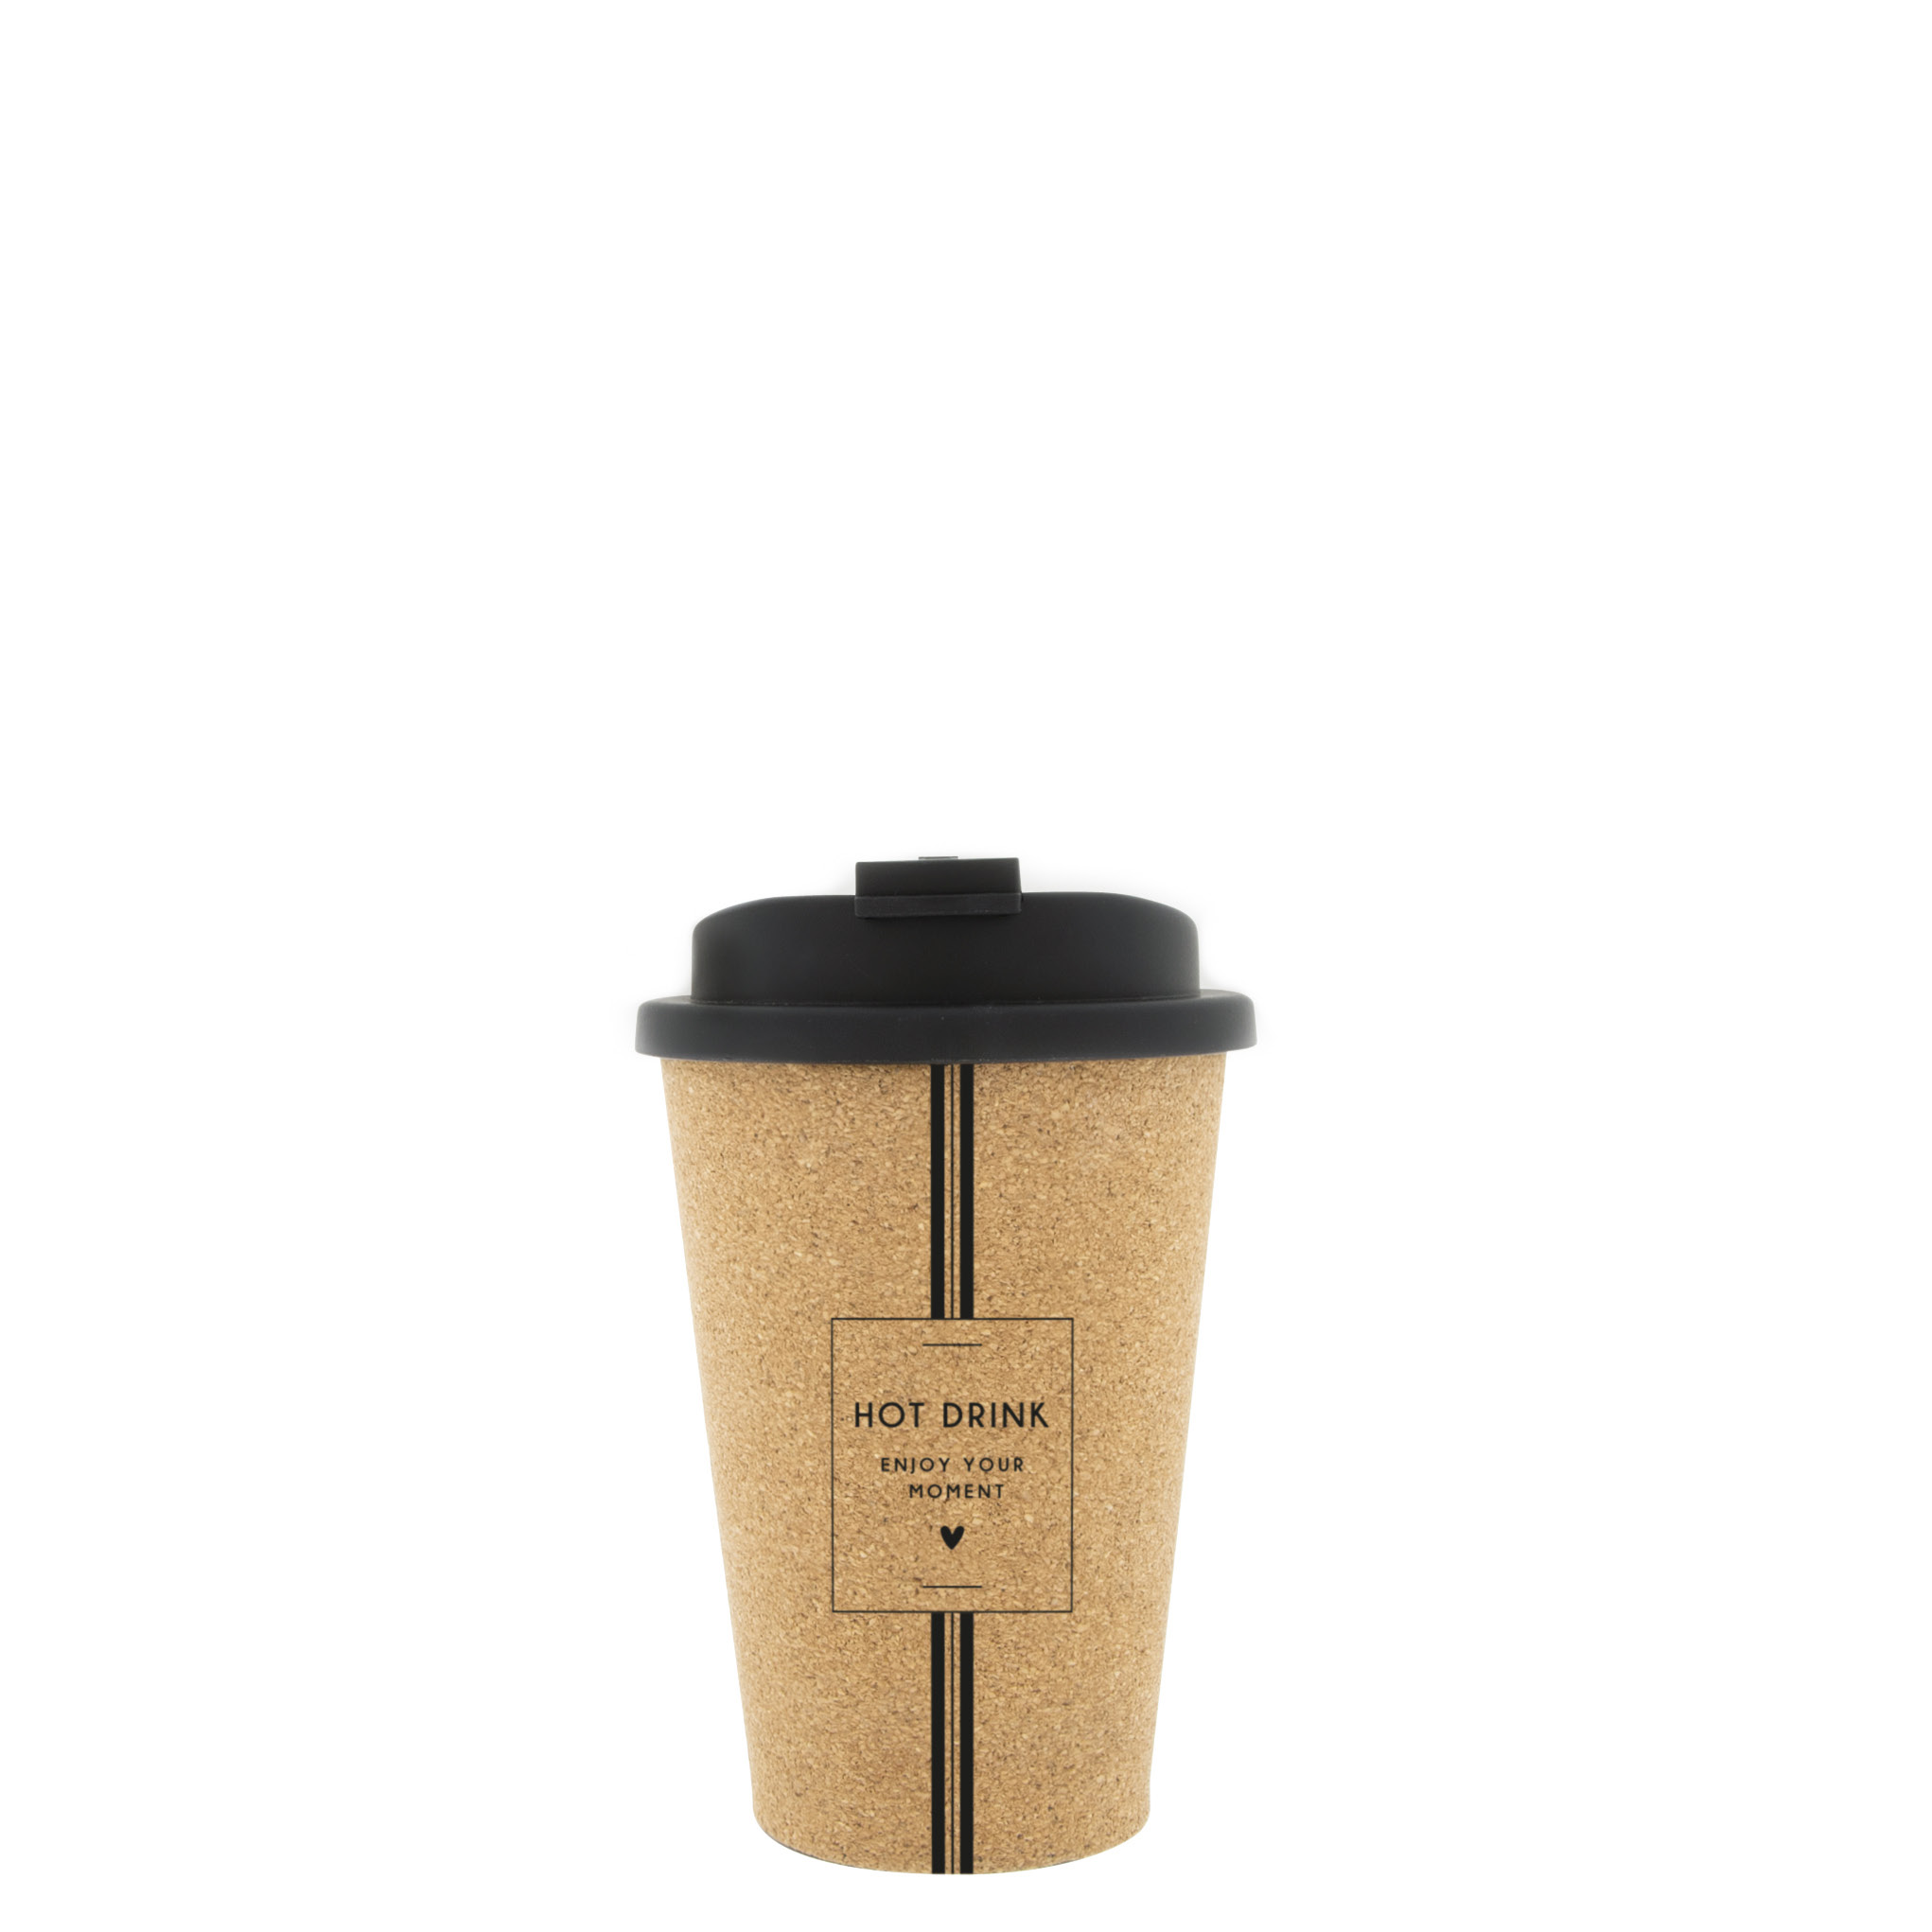 Kaffee to go Becher "Hot drink-enjoy you moment"